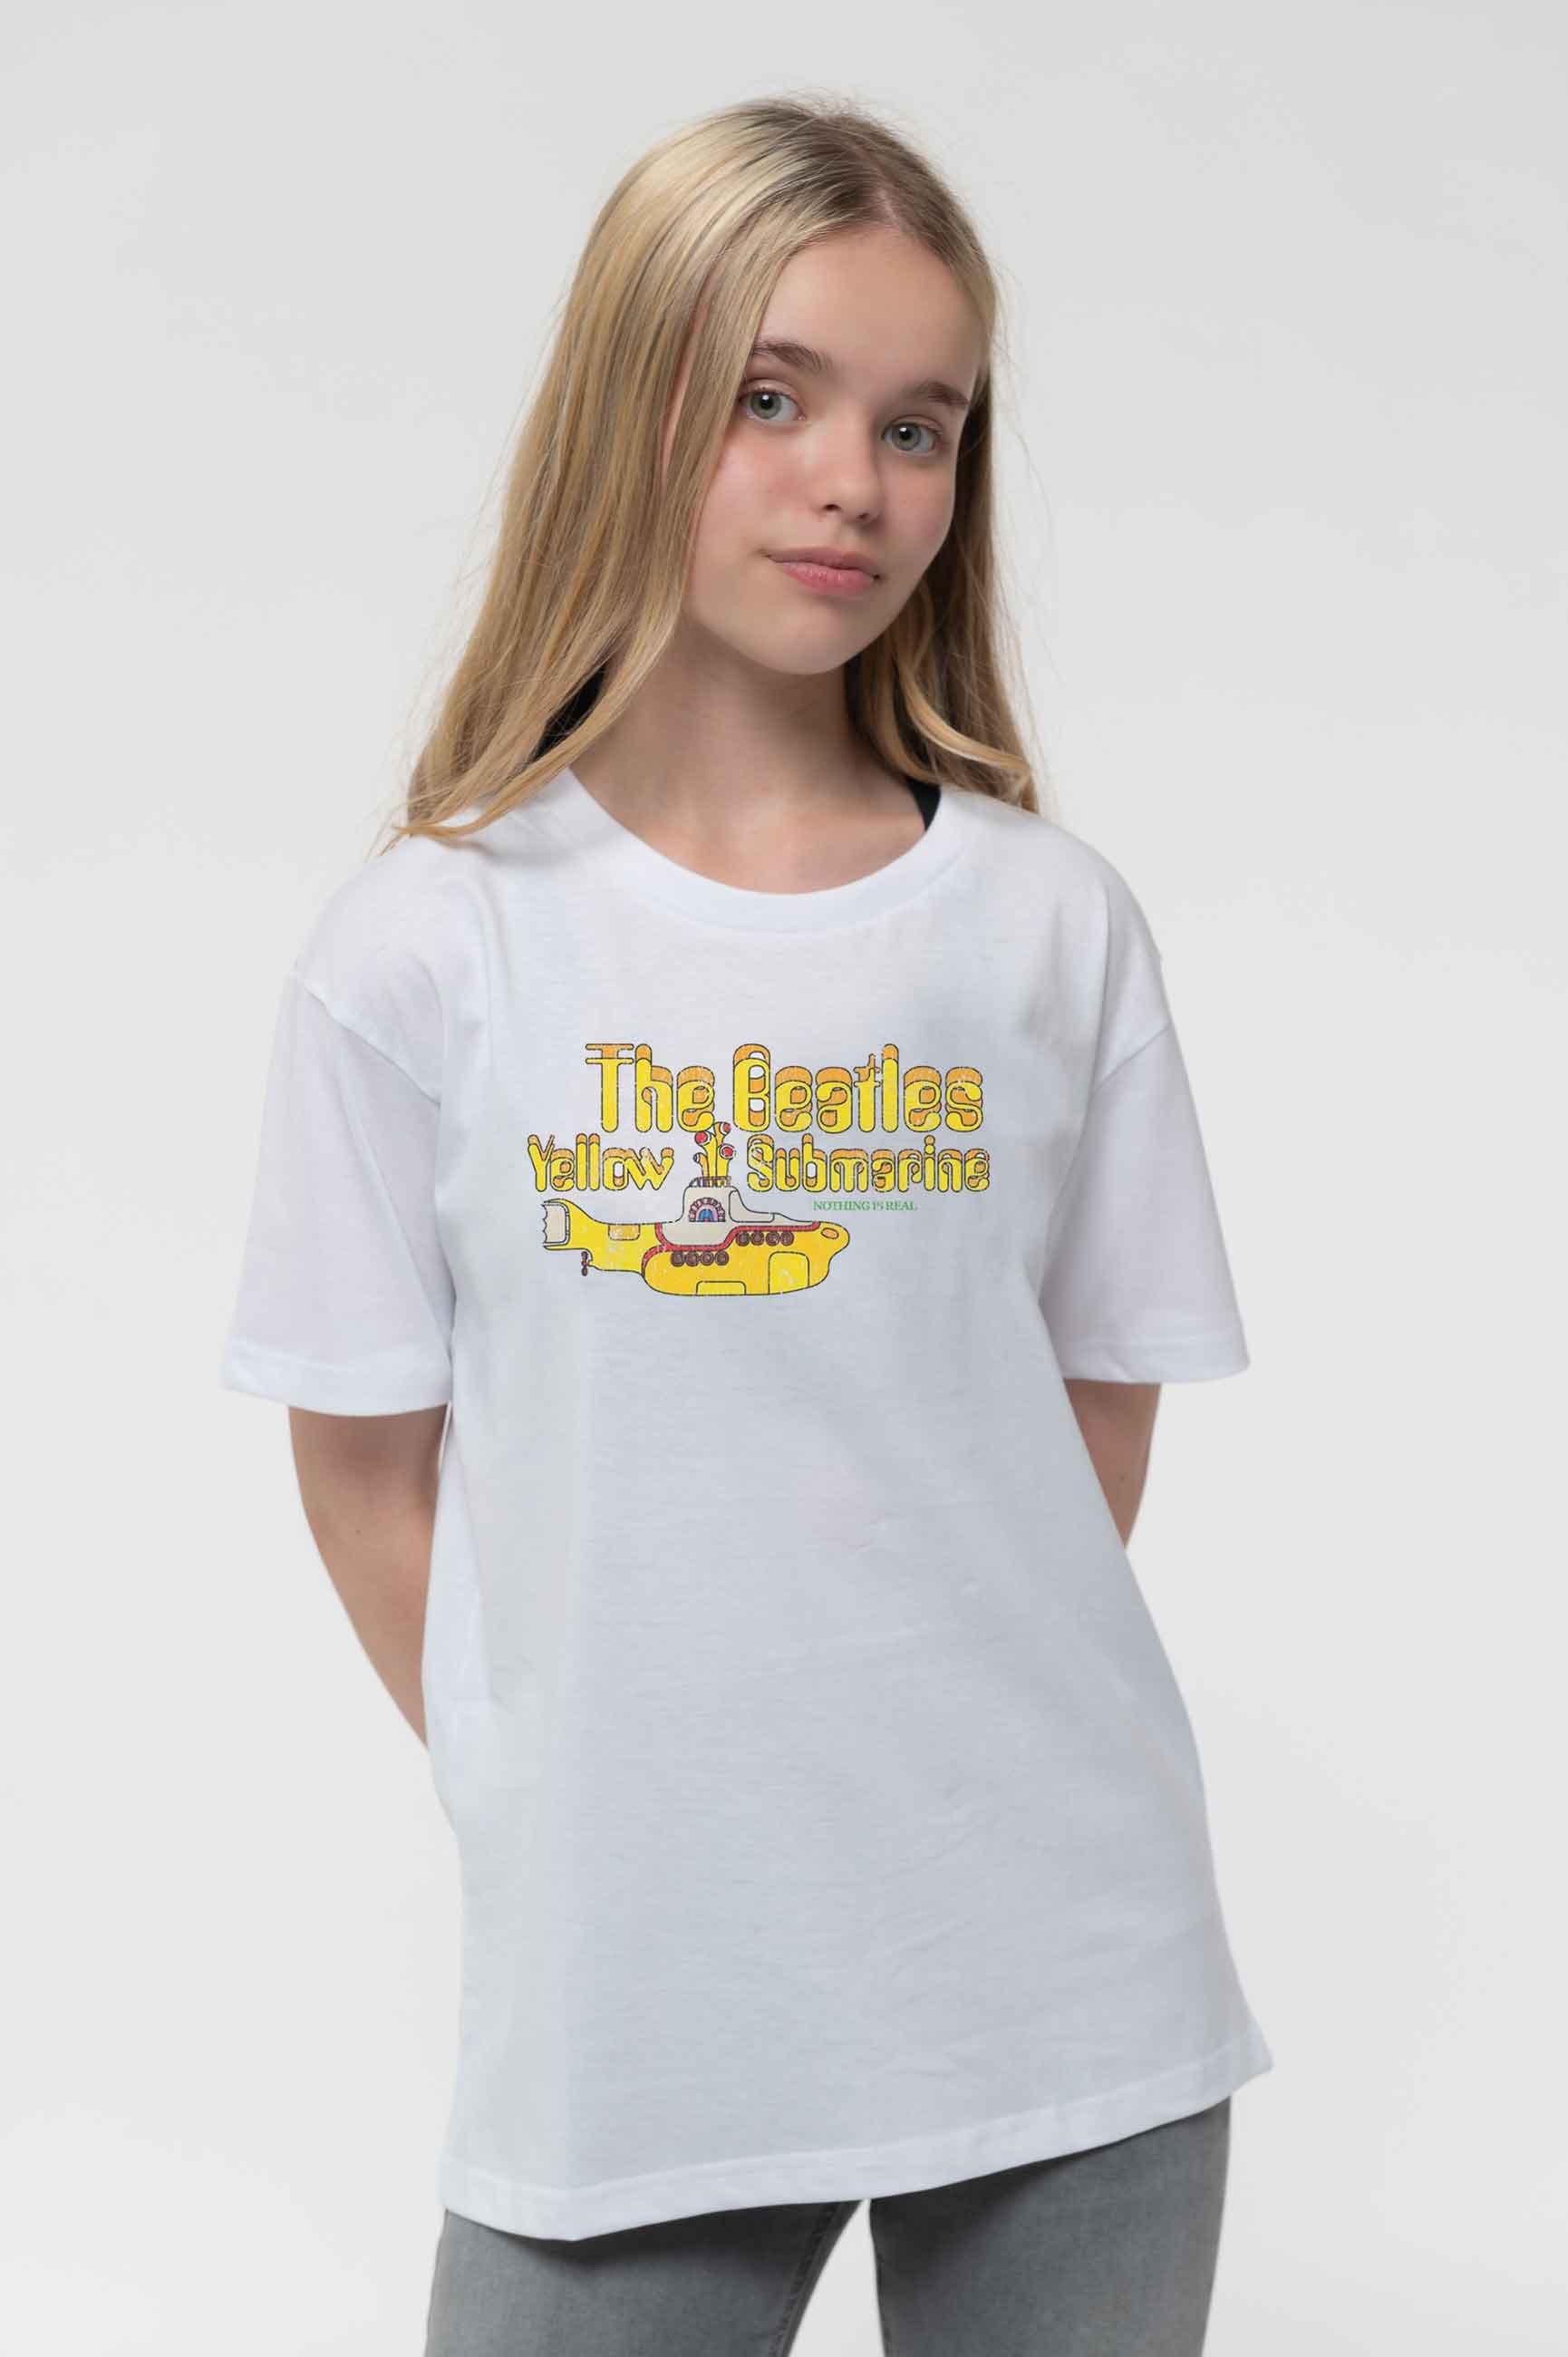 Yellow Submarine T Shirt